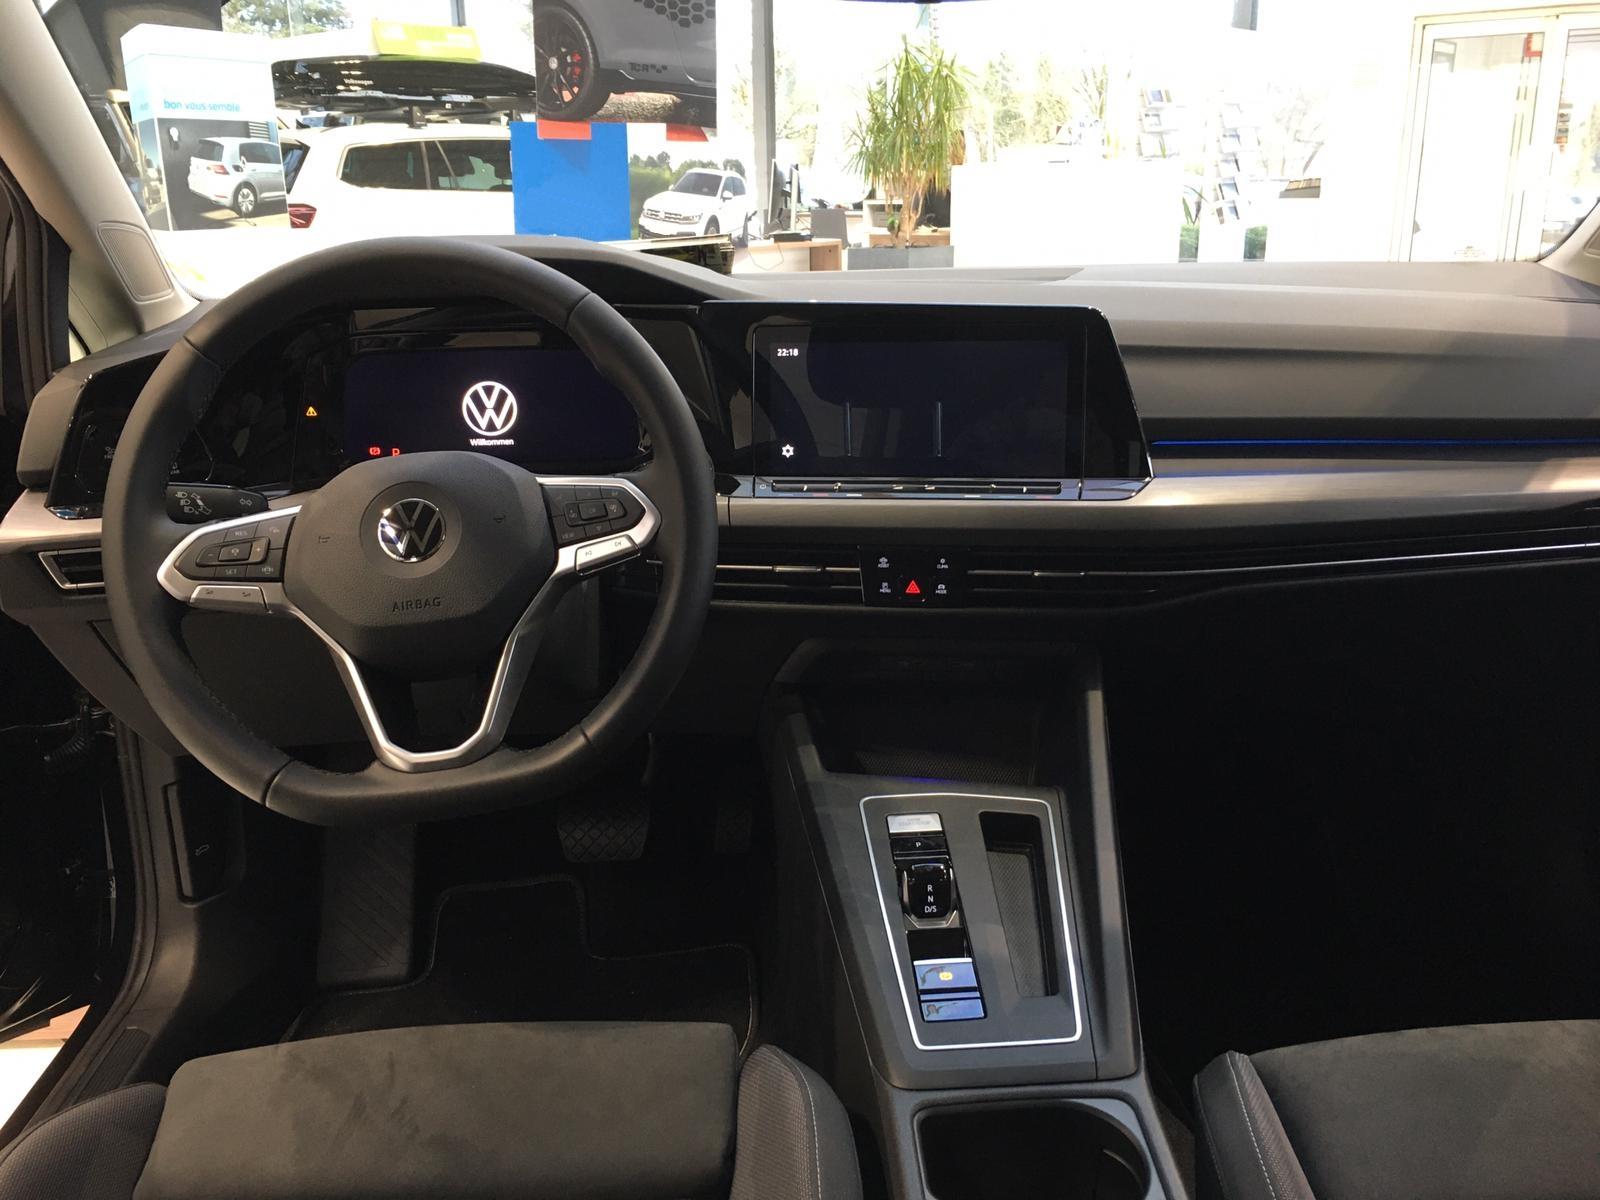 Volkswagen Golf 1.5 TSI 130PS Life Klimaautomatik Sitzheizung Lenkradheizung  AbstandsTempomat LED-Scheinw. PDC v+h 16LM Apple Car Play Android Auto, EU-Neuwagen & Reimporte, Autohaus Kleinfeld, EU Fahrzeuge